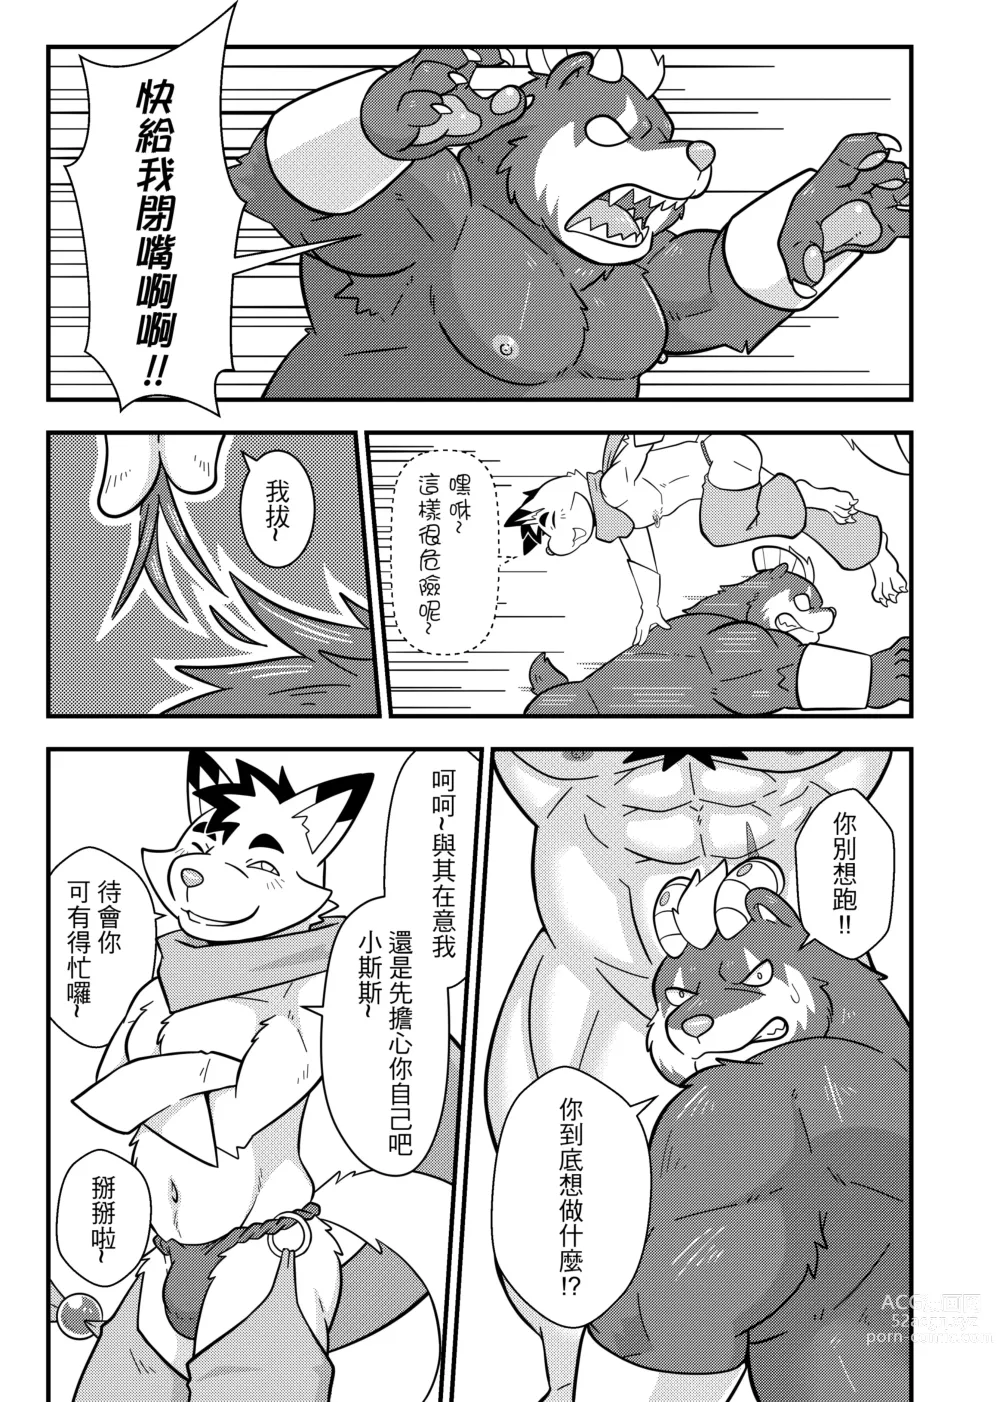 Page 14 of doujinshi 勇者的大小只有魔王塞得下4